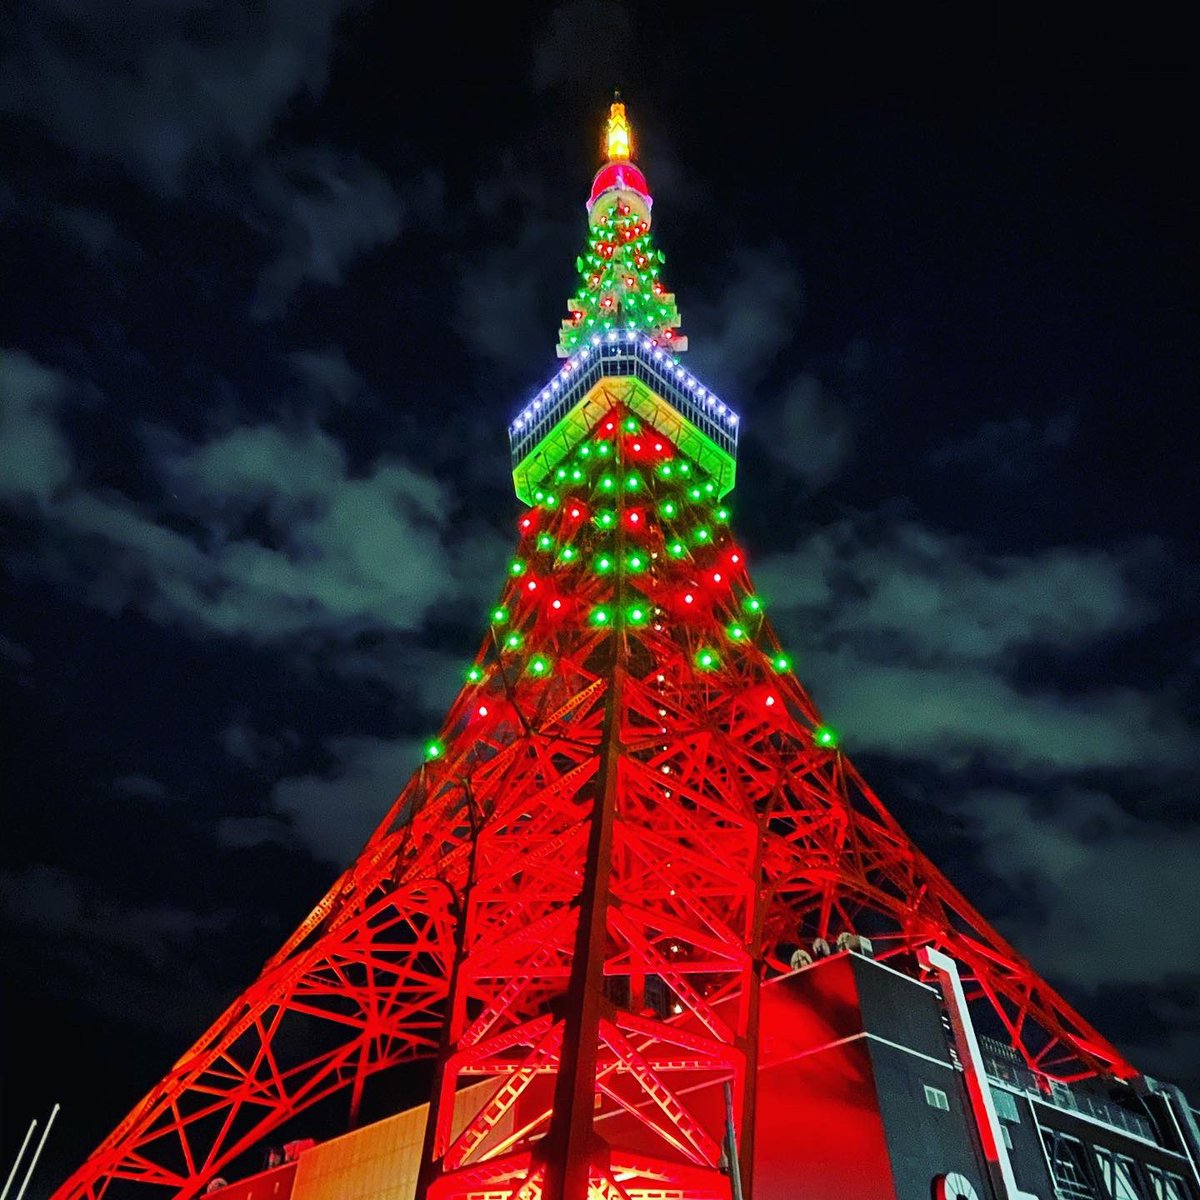 ノッポン弟 Tokyo Tower 公式 サイレント トーキョー 公開記念 スペシャルクリスマスライトアップを点灯中です 一足早いクリスマスツリー仕様の東京タワーは本日24時まで お見逃しなく サイレントトーキョー